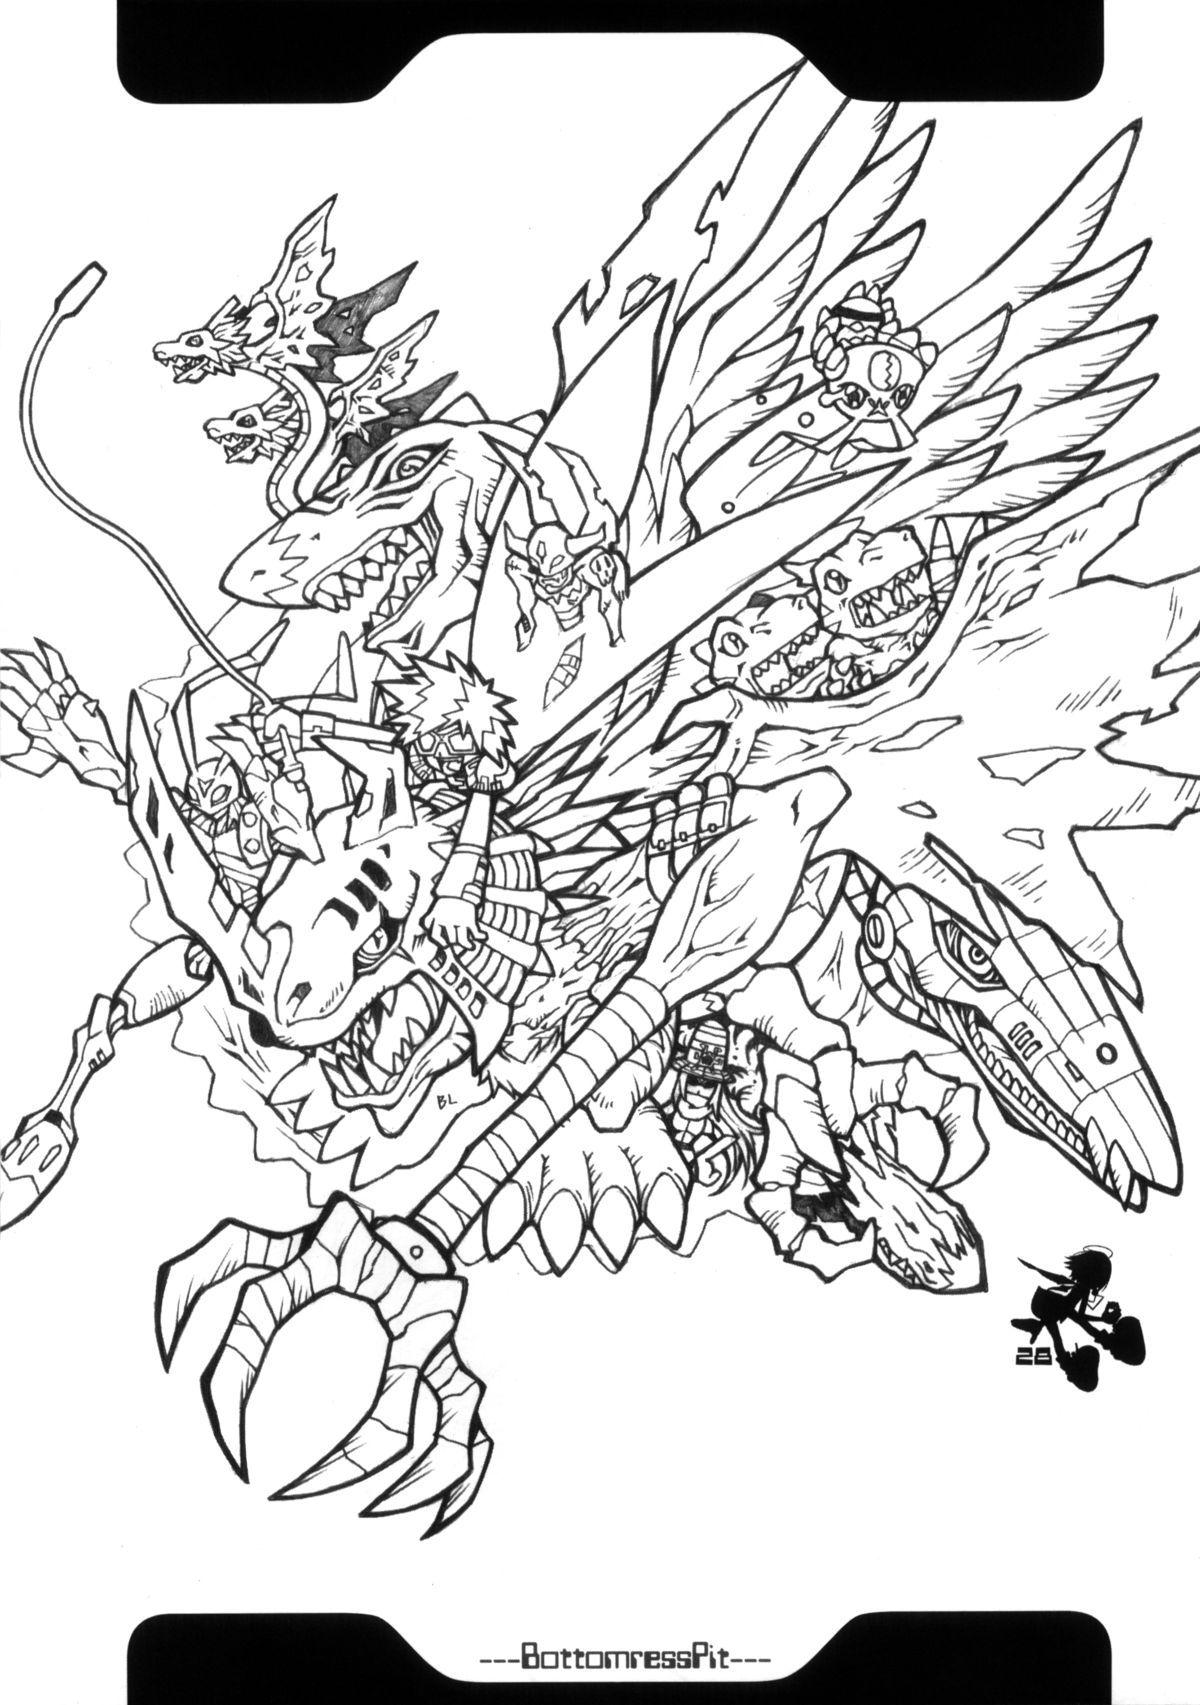 Digimon Queen 01+ 26